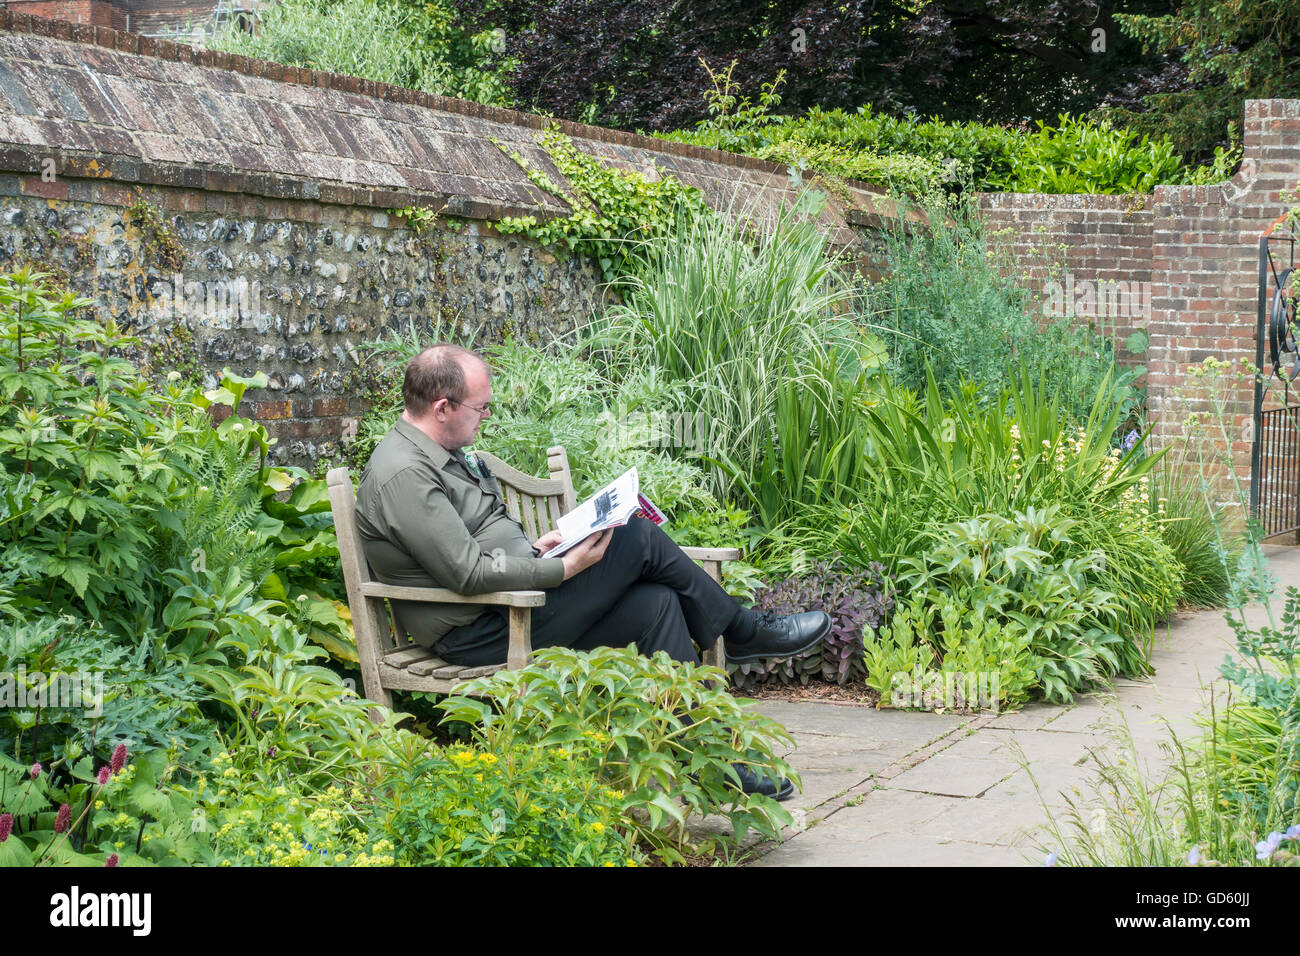 Hombre en un banco leyendo una revista en parque tranquilo jardín Foto de stock